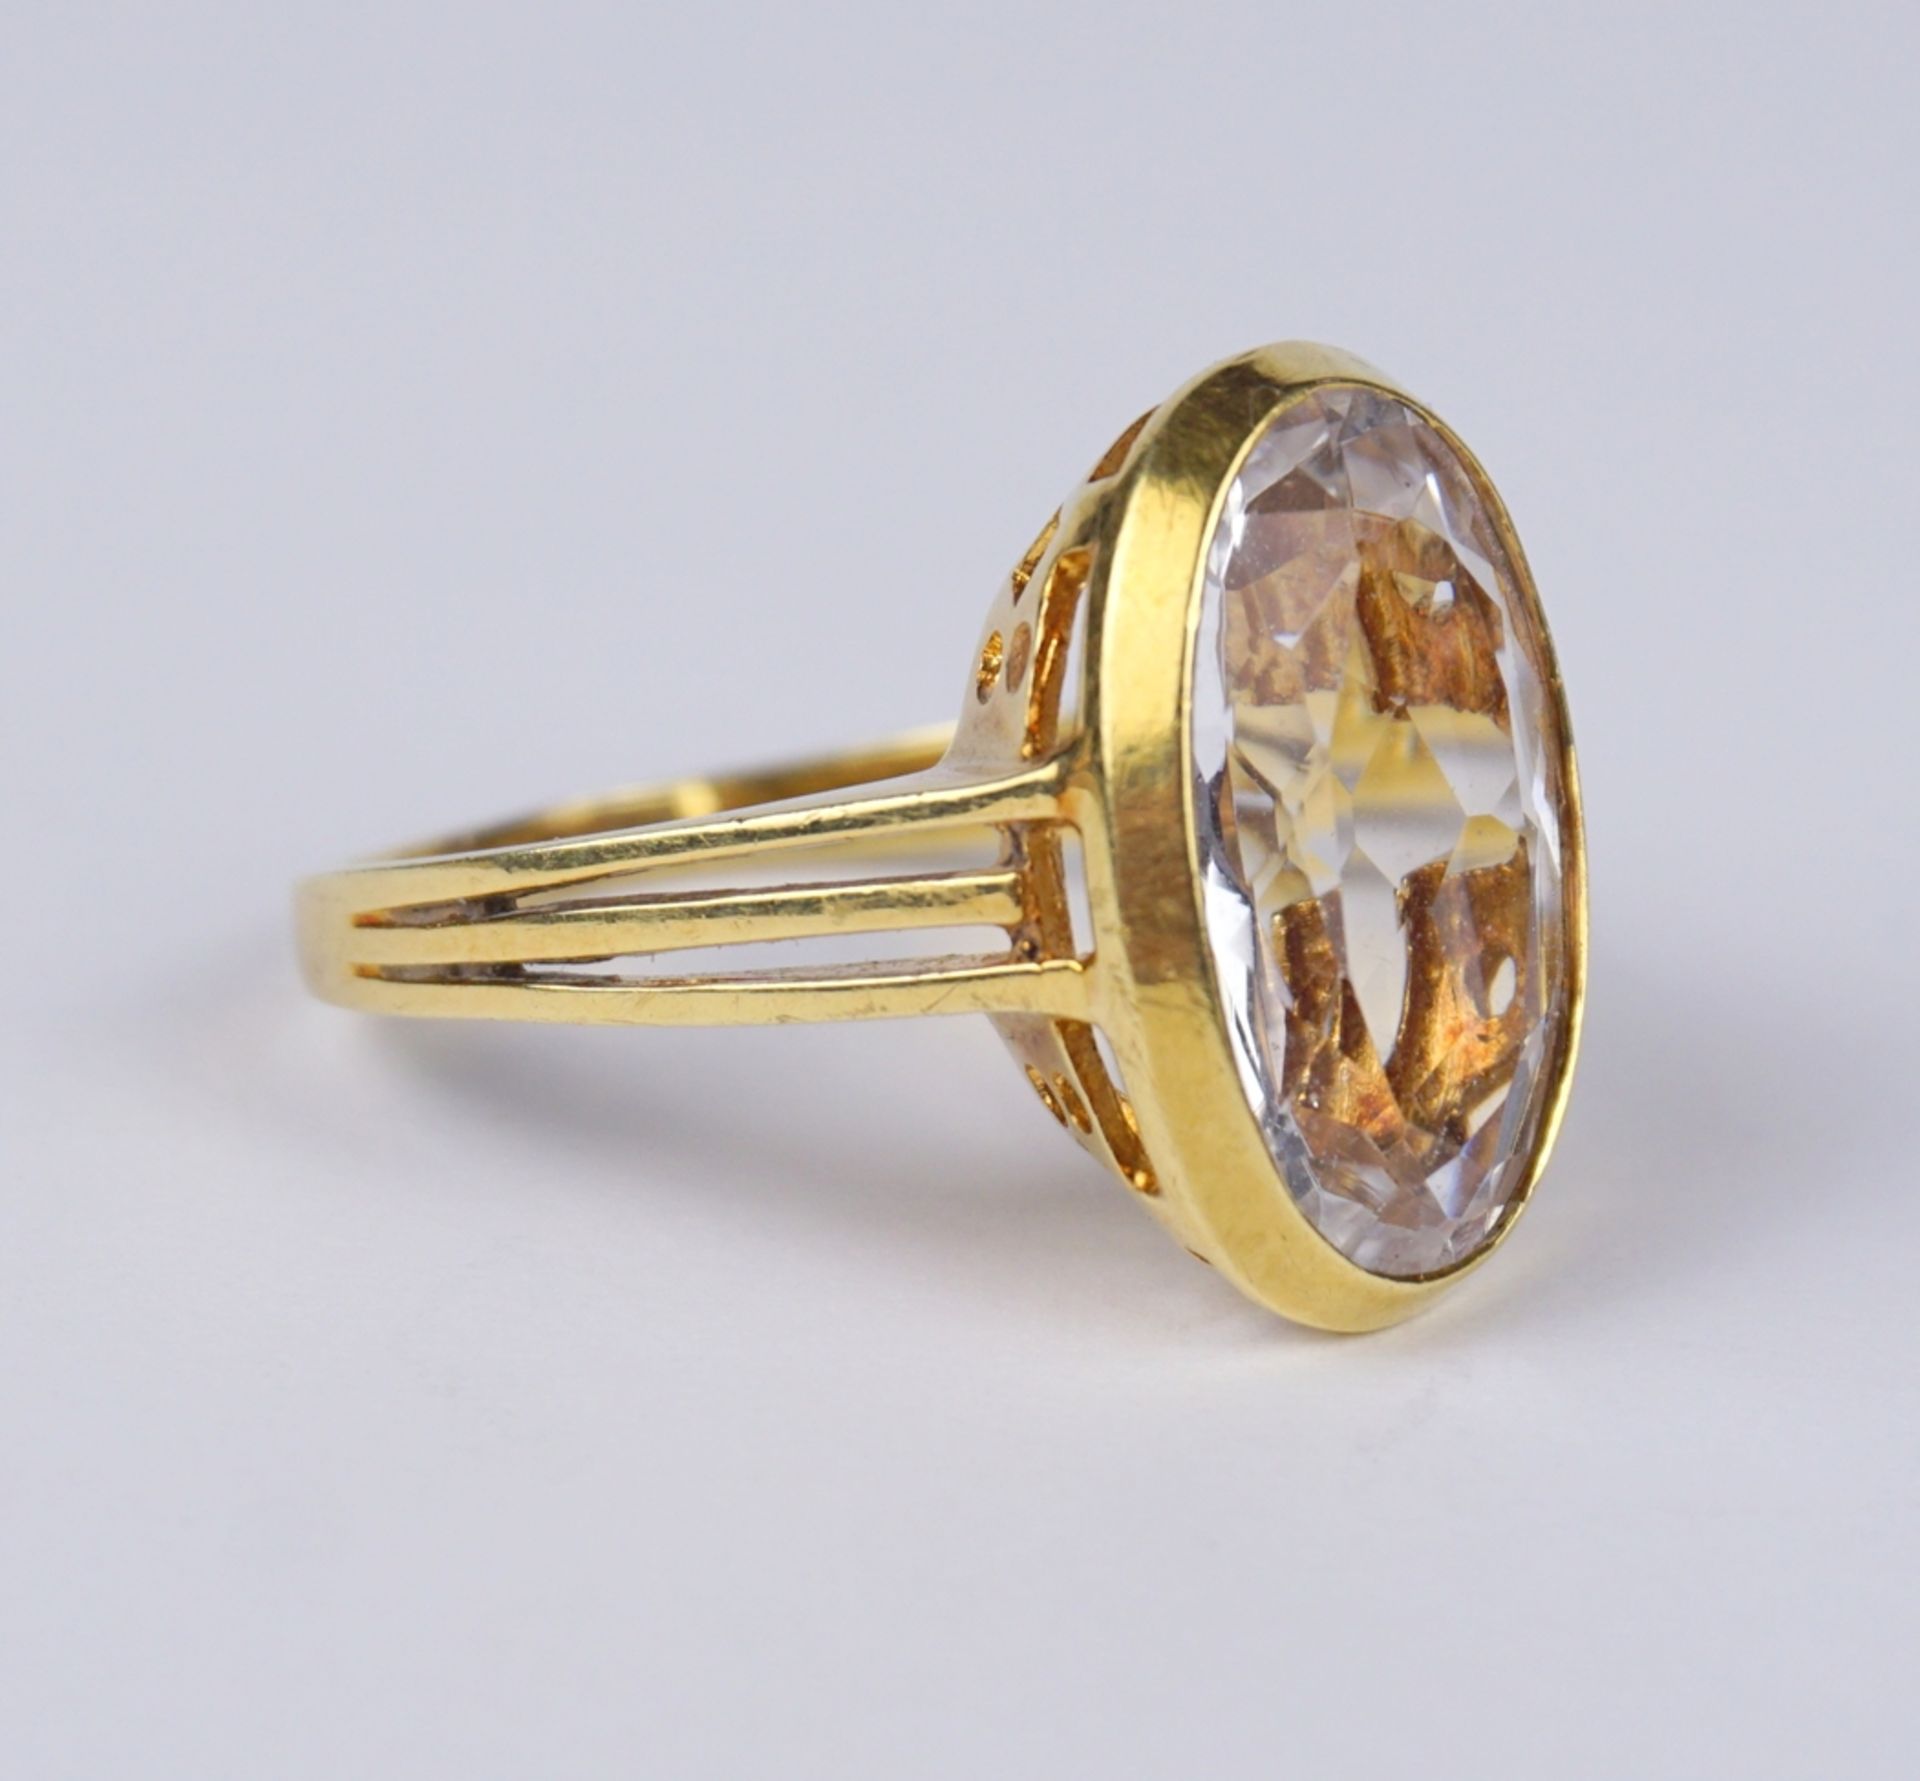 Aquamarin-Ring, 585er Gold, Gew.6,13g - Image 2 of 3